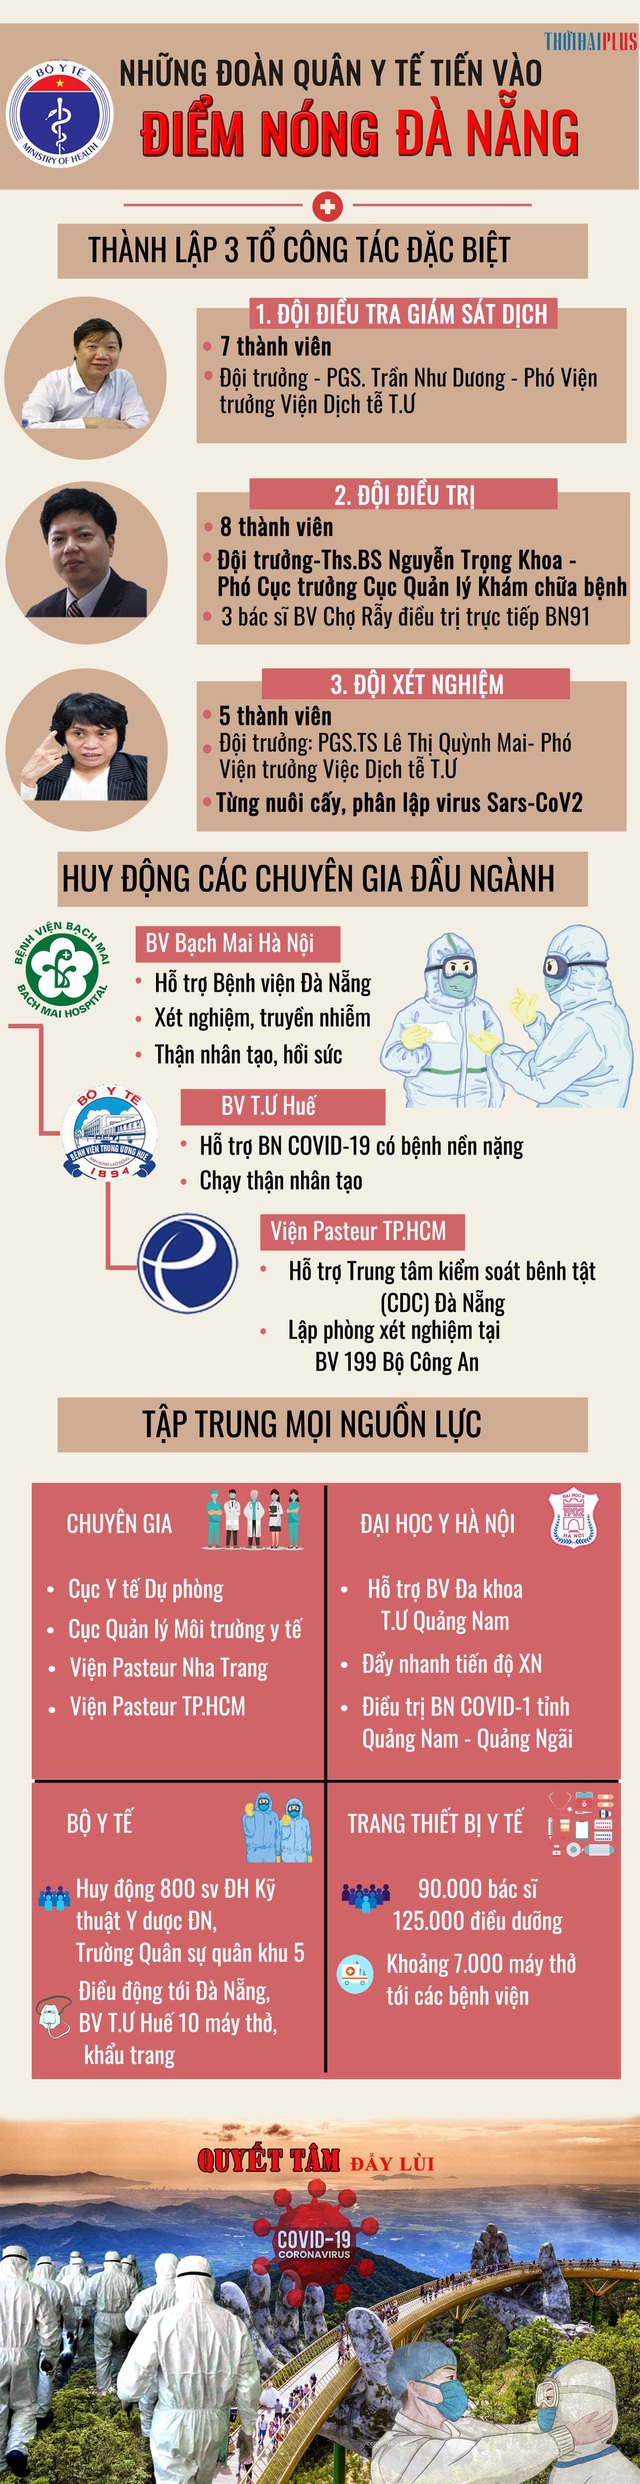 [Infographic] Toàn cảnh đội quân tinh nhuệ Bộ Y tế tung vào điểm nóng Đà Nẵng - Ảnh 2.